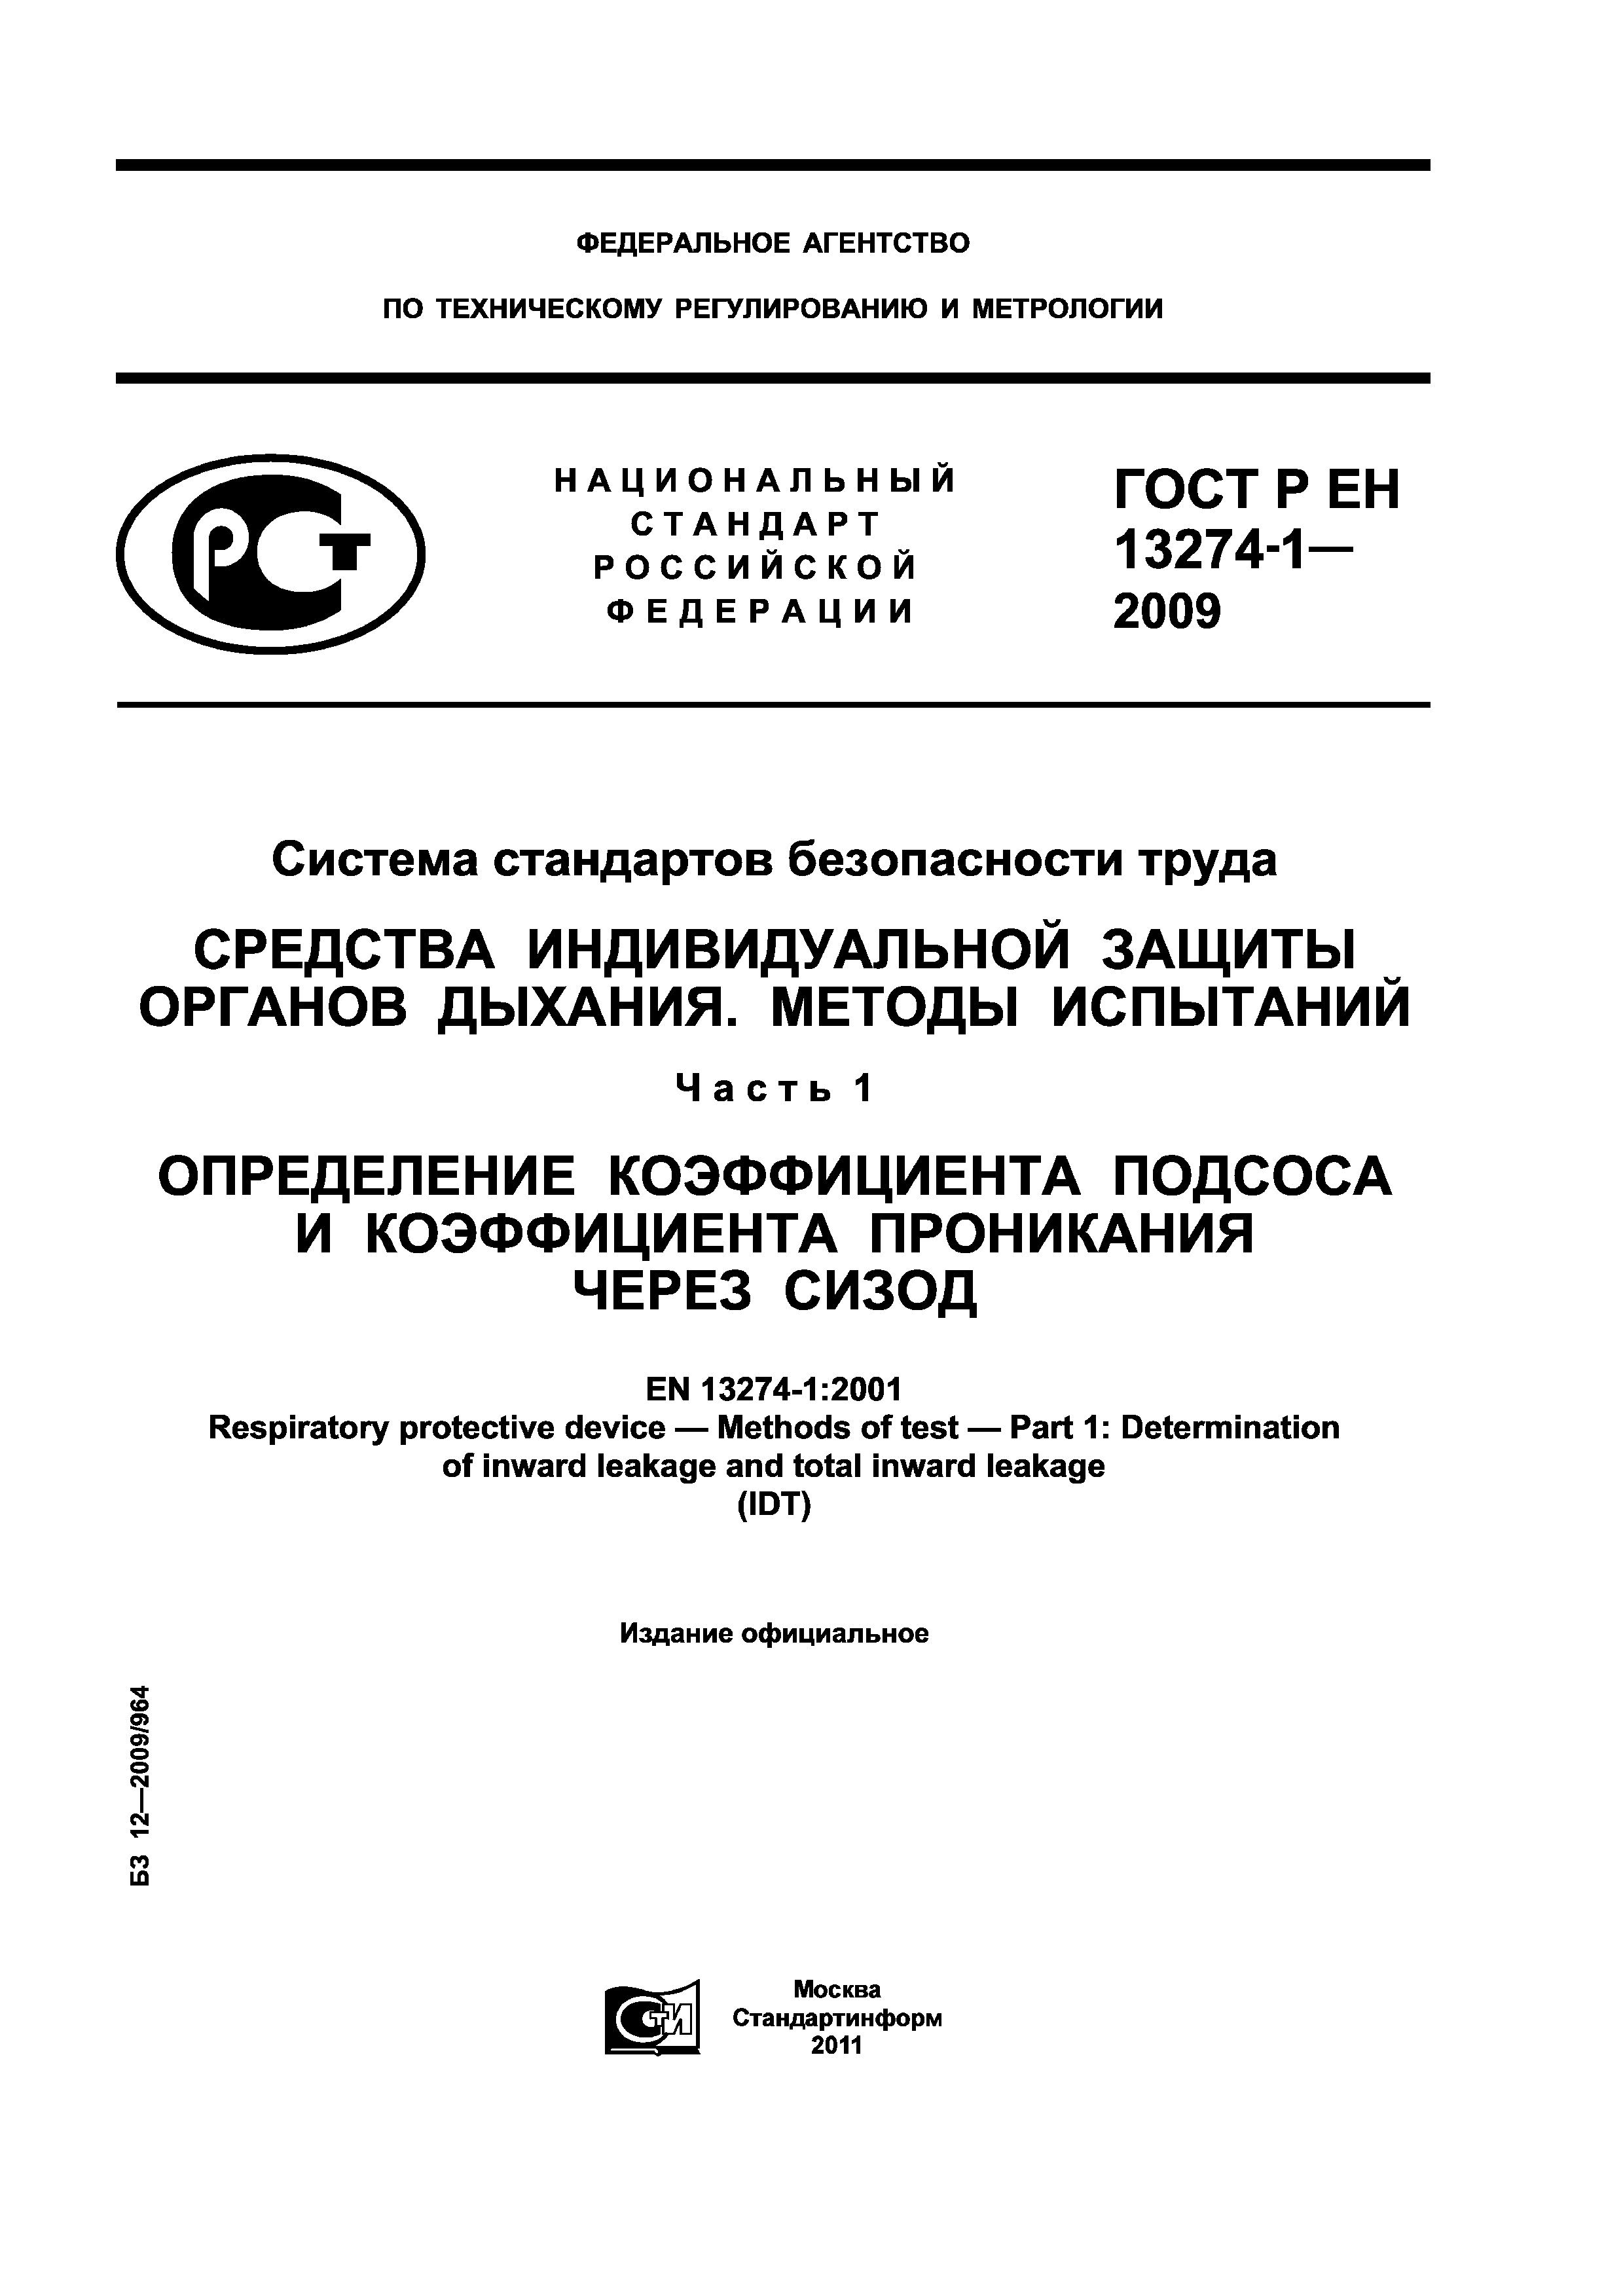 ГОСТ Р ЕН 13274-1-2009